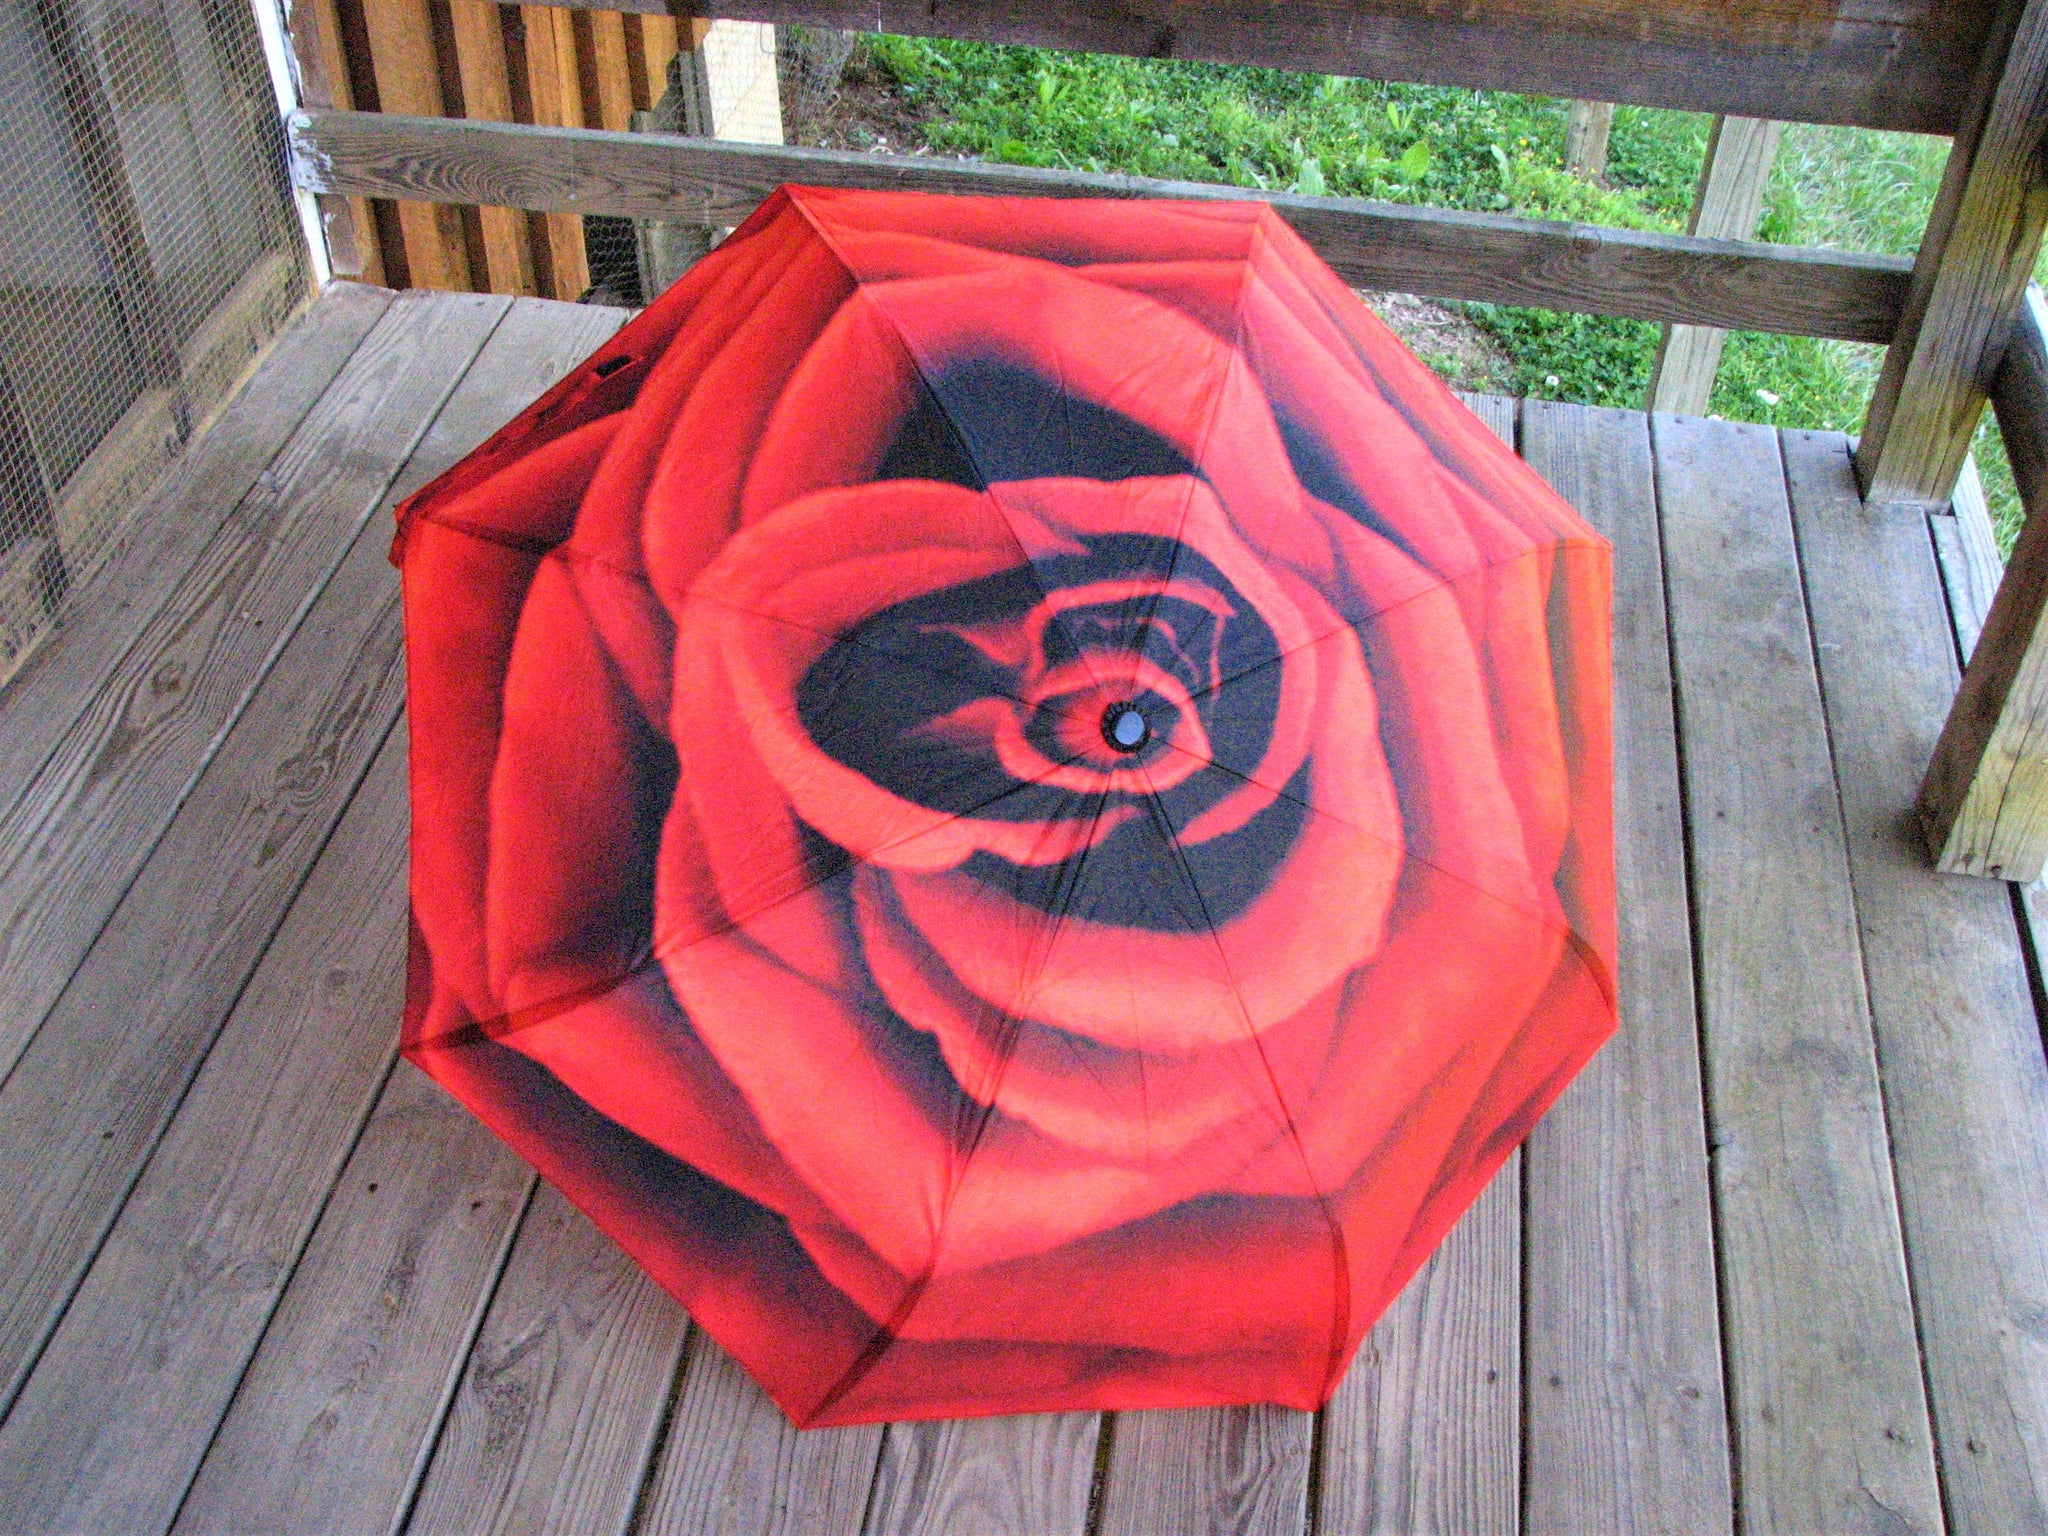 Rose Automatic Foldable Umbrella